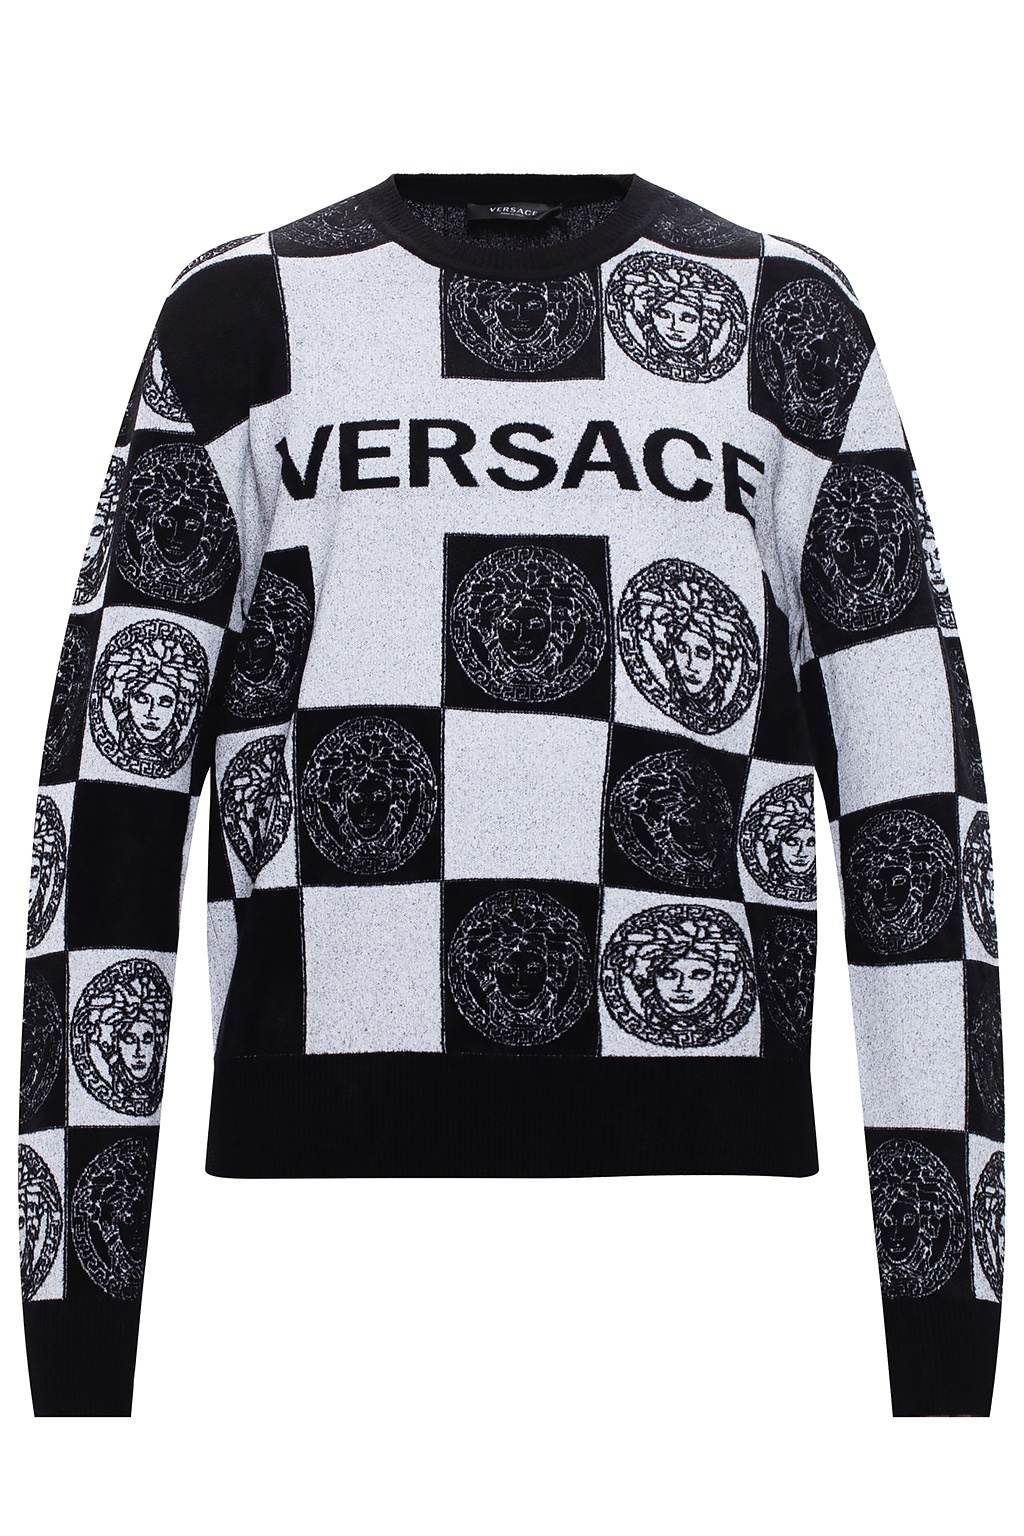 versace sweater white